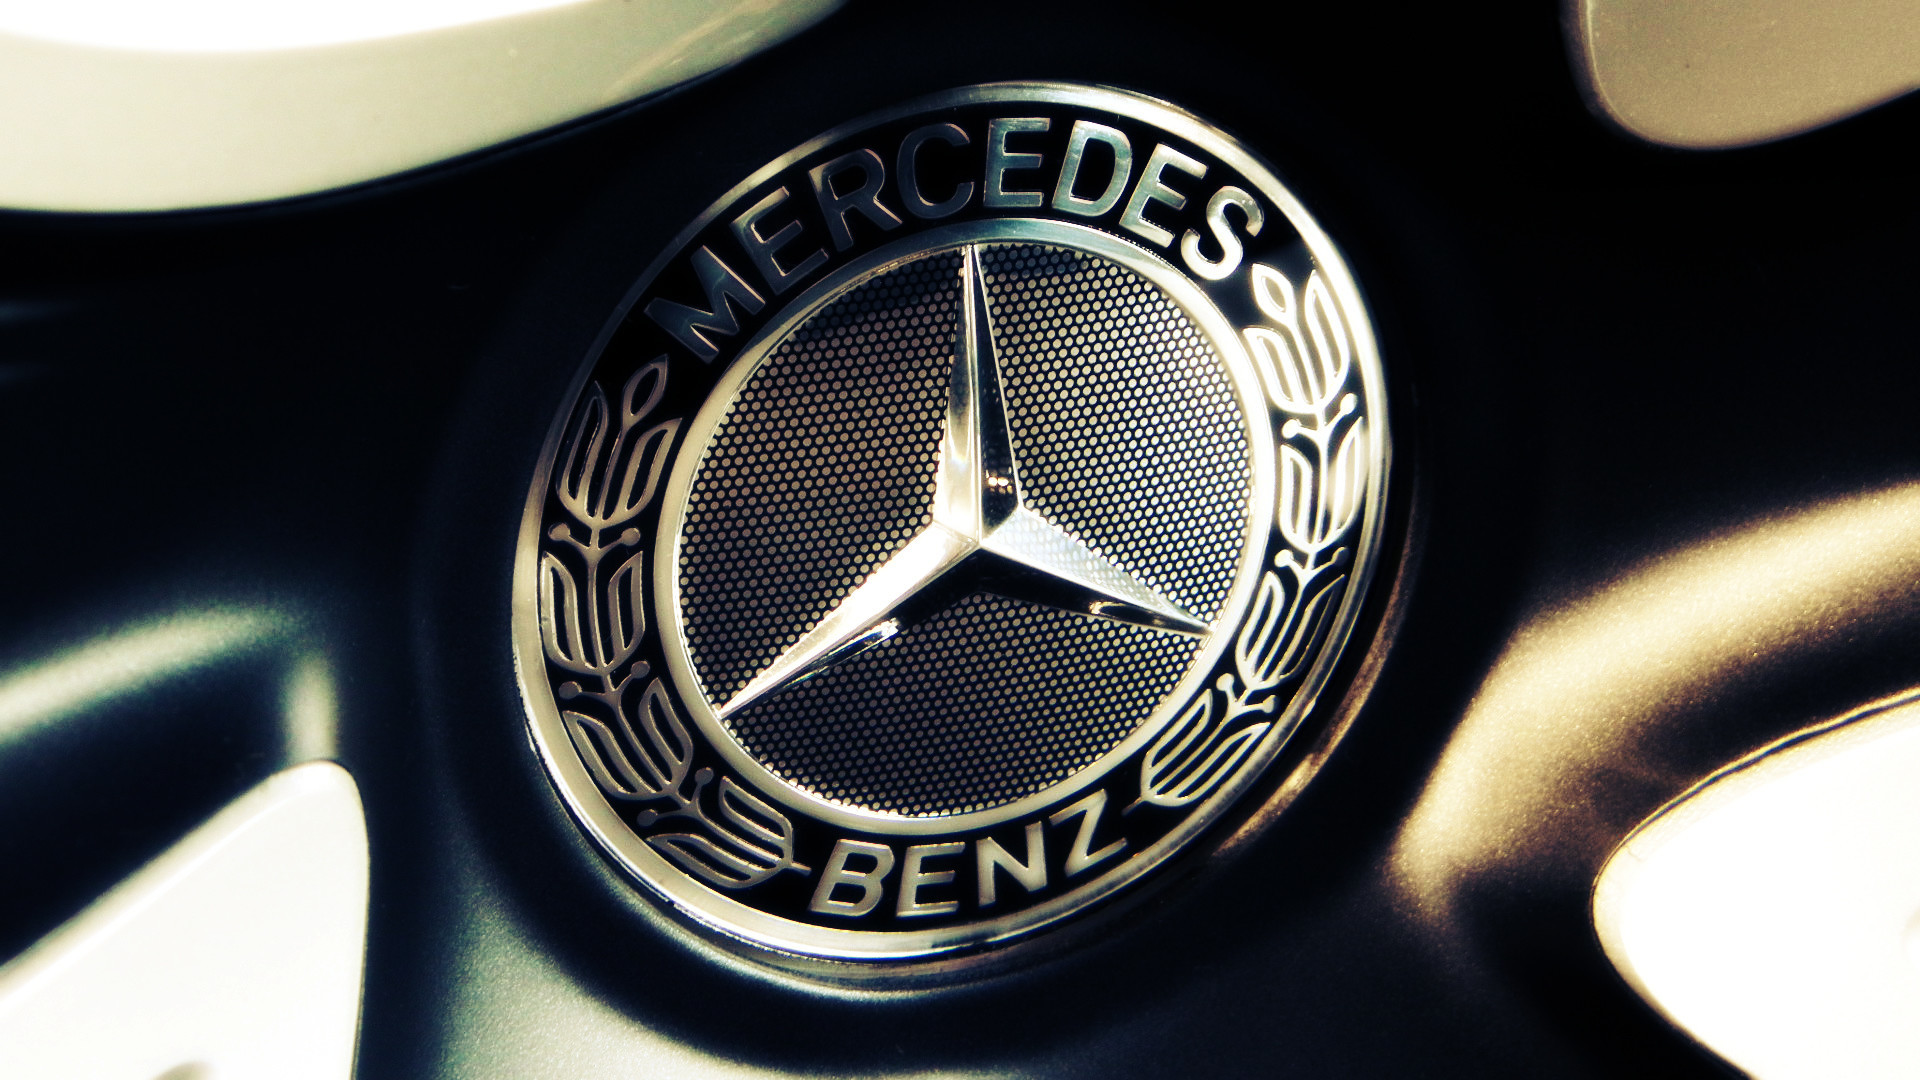 Mercedes World: Design